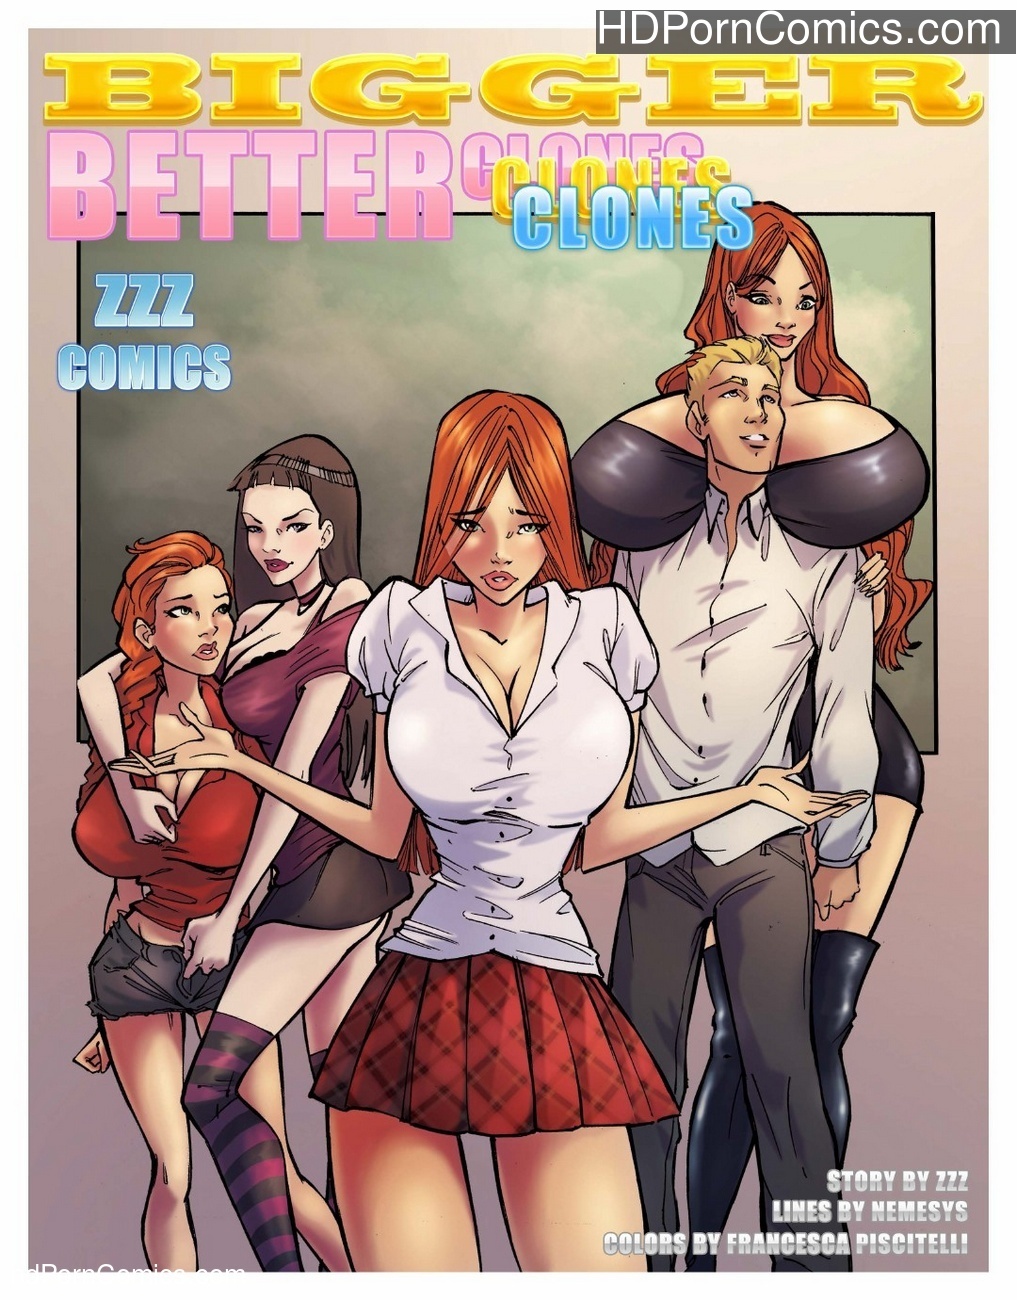 Zzz Sexy - Bigger Better Clones 1 Sex Comic - HD Porn Comics